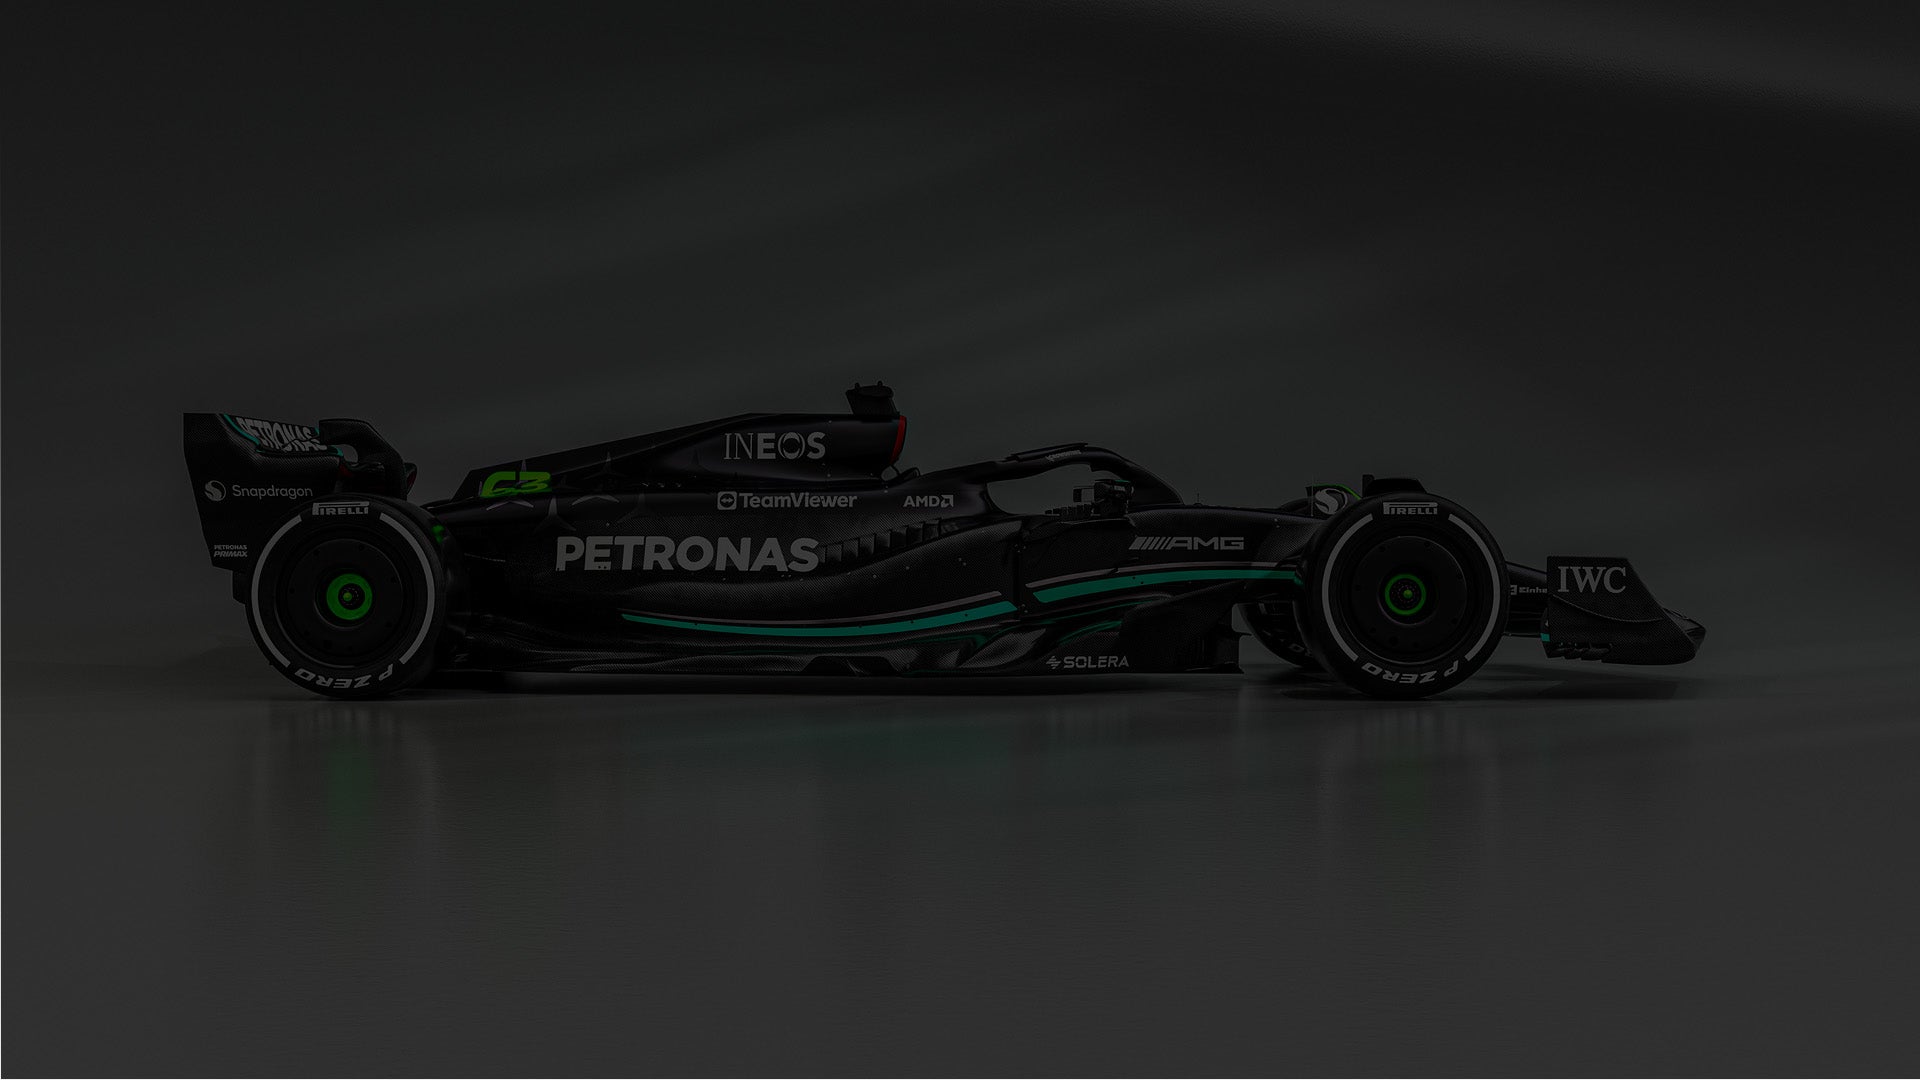 Blouson Mercedes AMG Petronas Team F1 de couleur noir